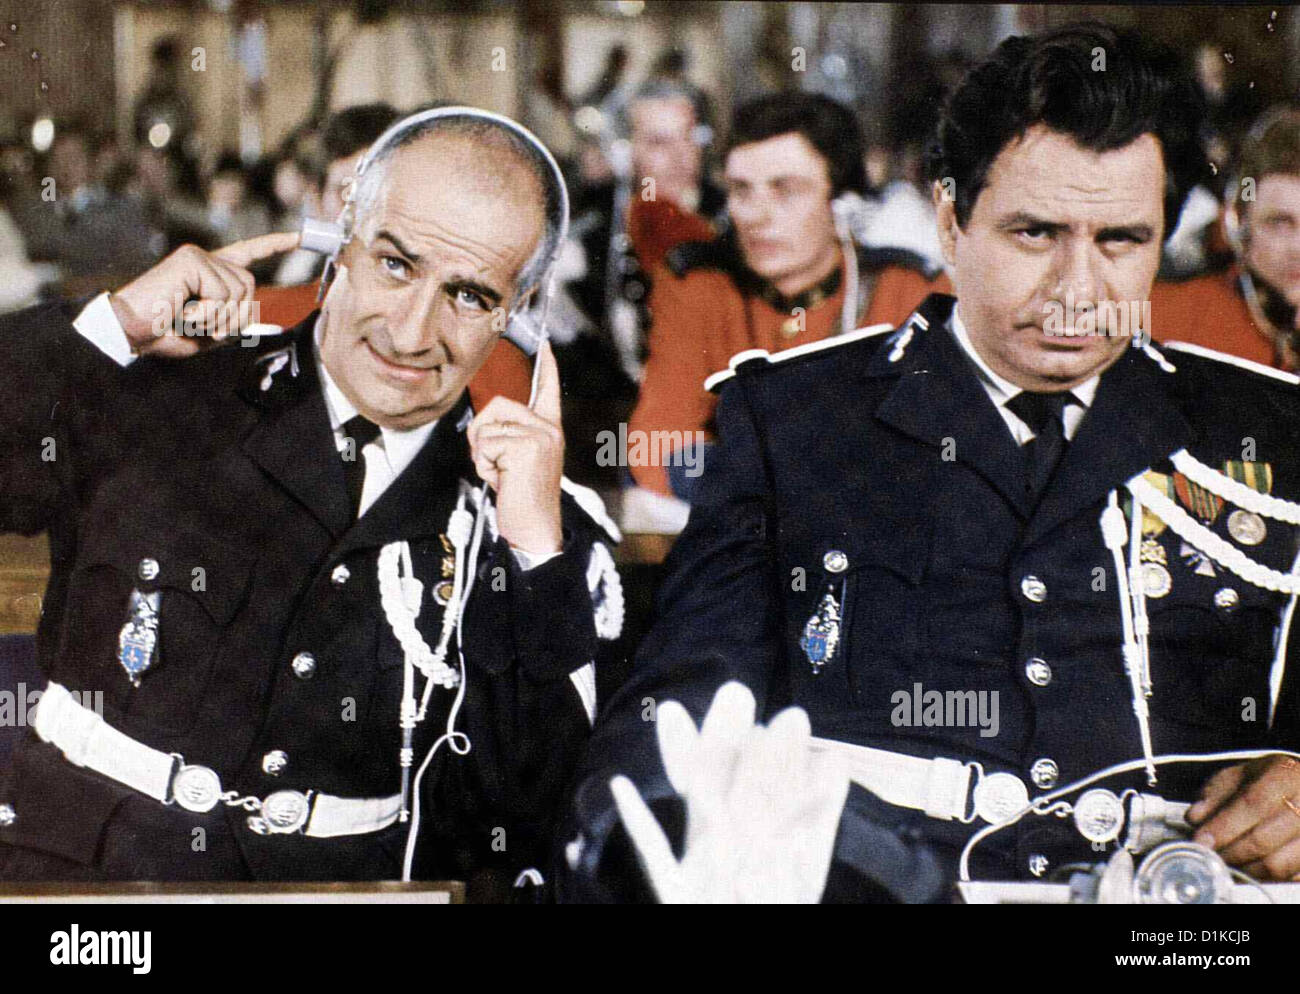 Der Gendarm Vom Broadway   Gendarme A New York, Le   Louis de FunÃƒÂ©s, Michel Galabru (r.) *** Local Caption *** 1966  -- Stock Photo